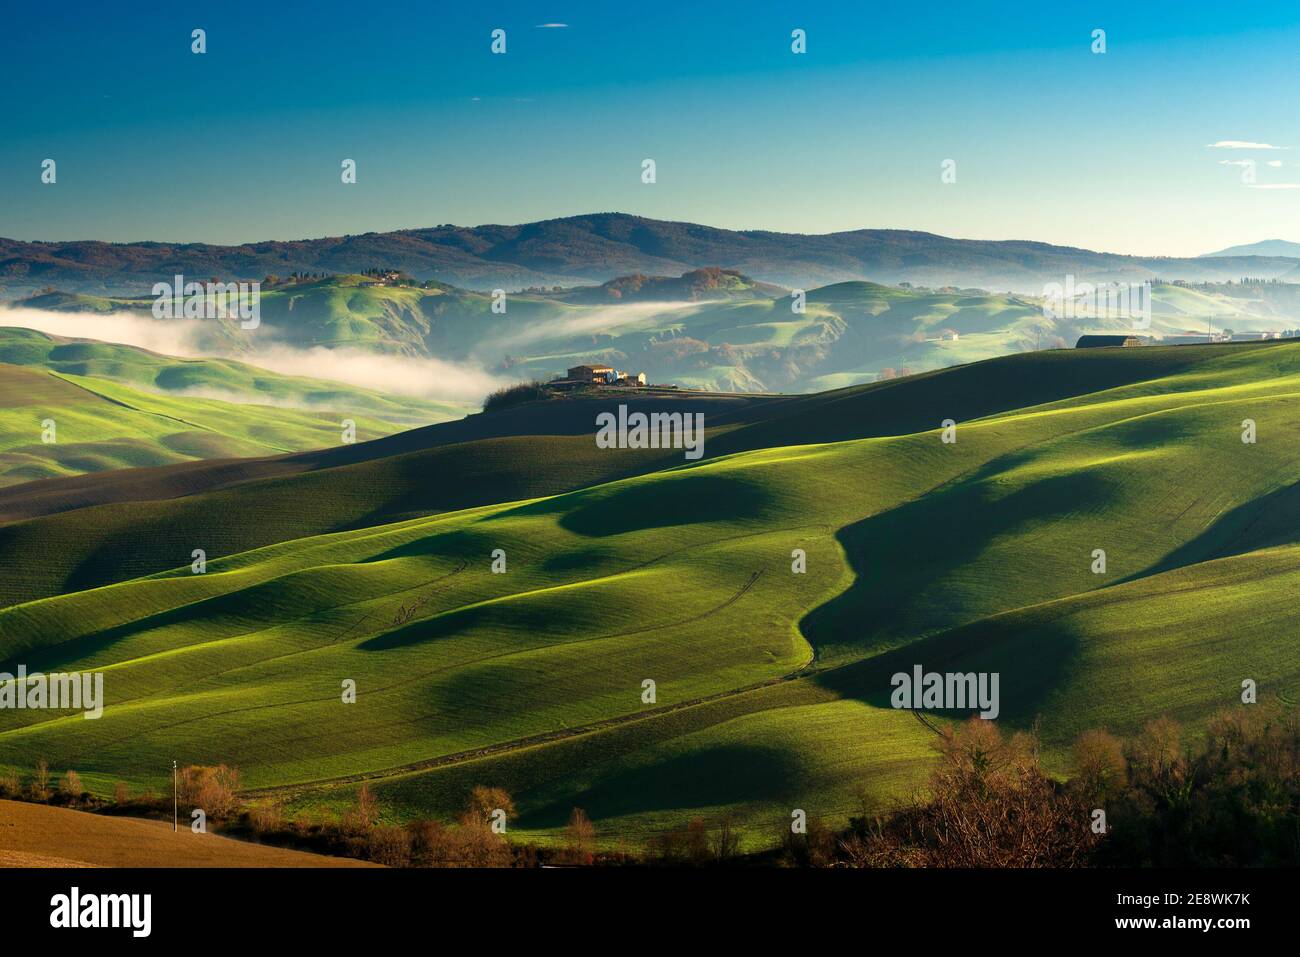 Verdi colline ondulate in una mattinata di sole invernale nello scenario del paesaggio delle crete senesi vicino Asciano, Siena Foto Stock